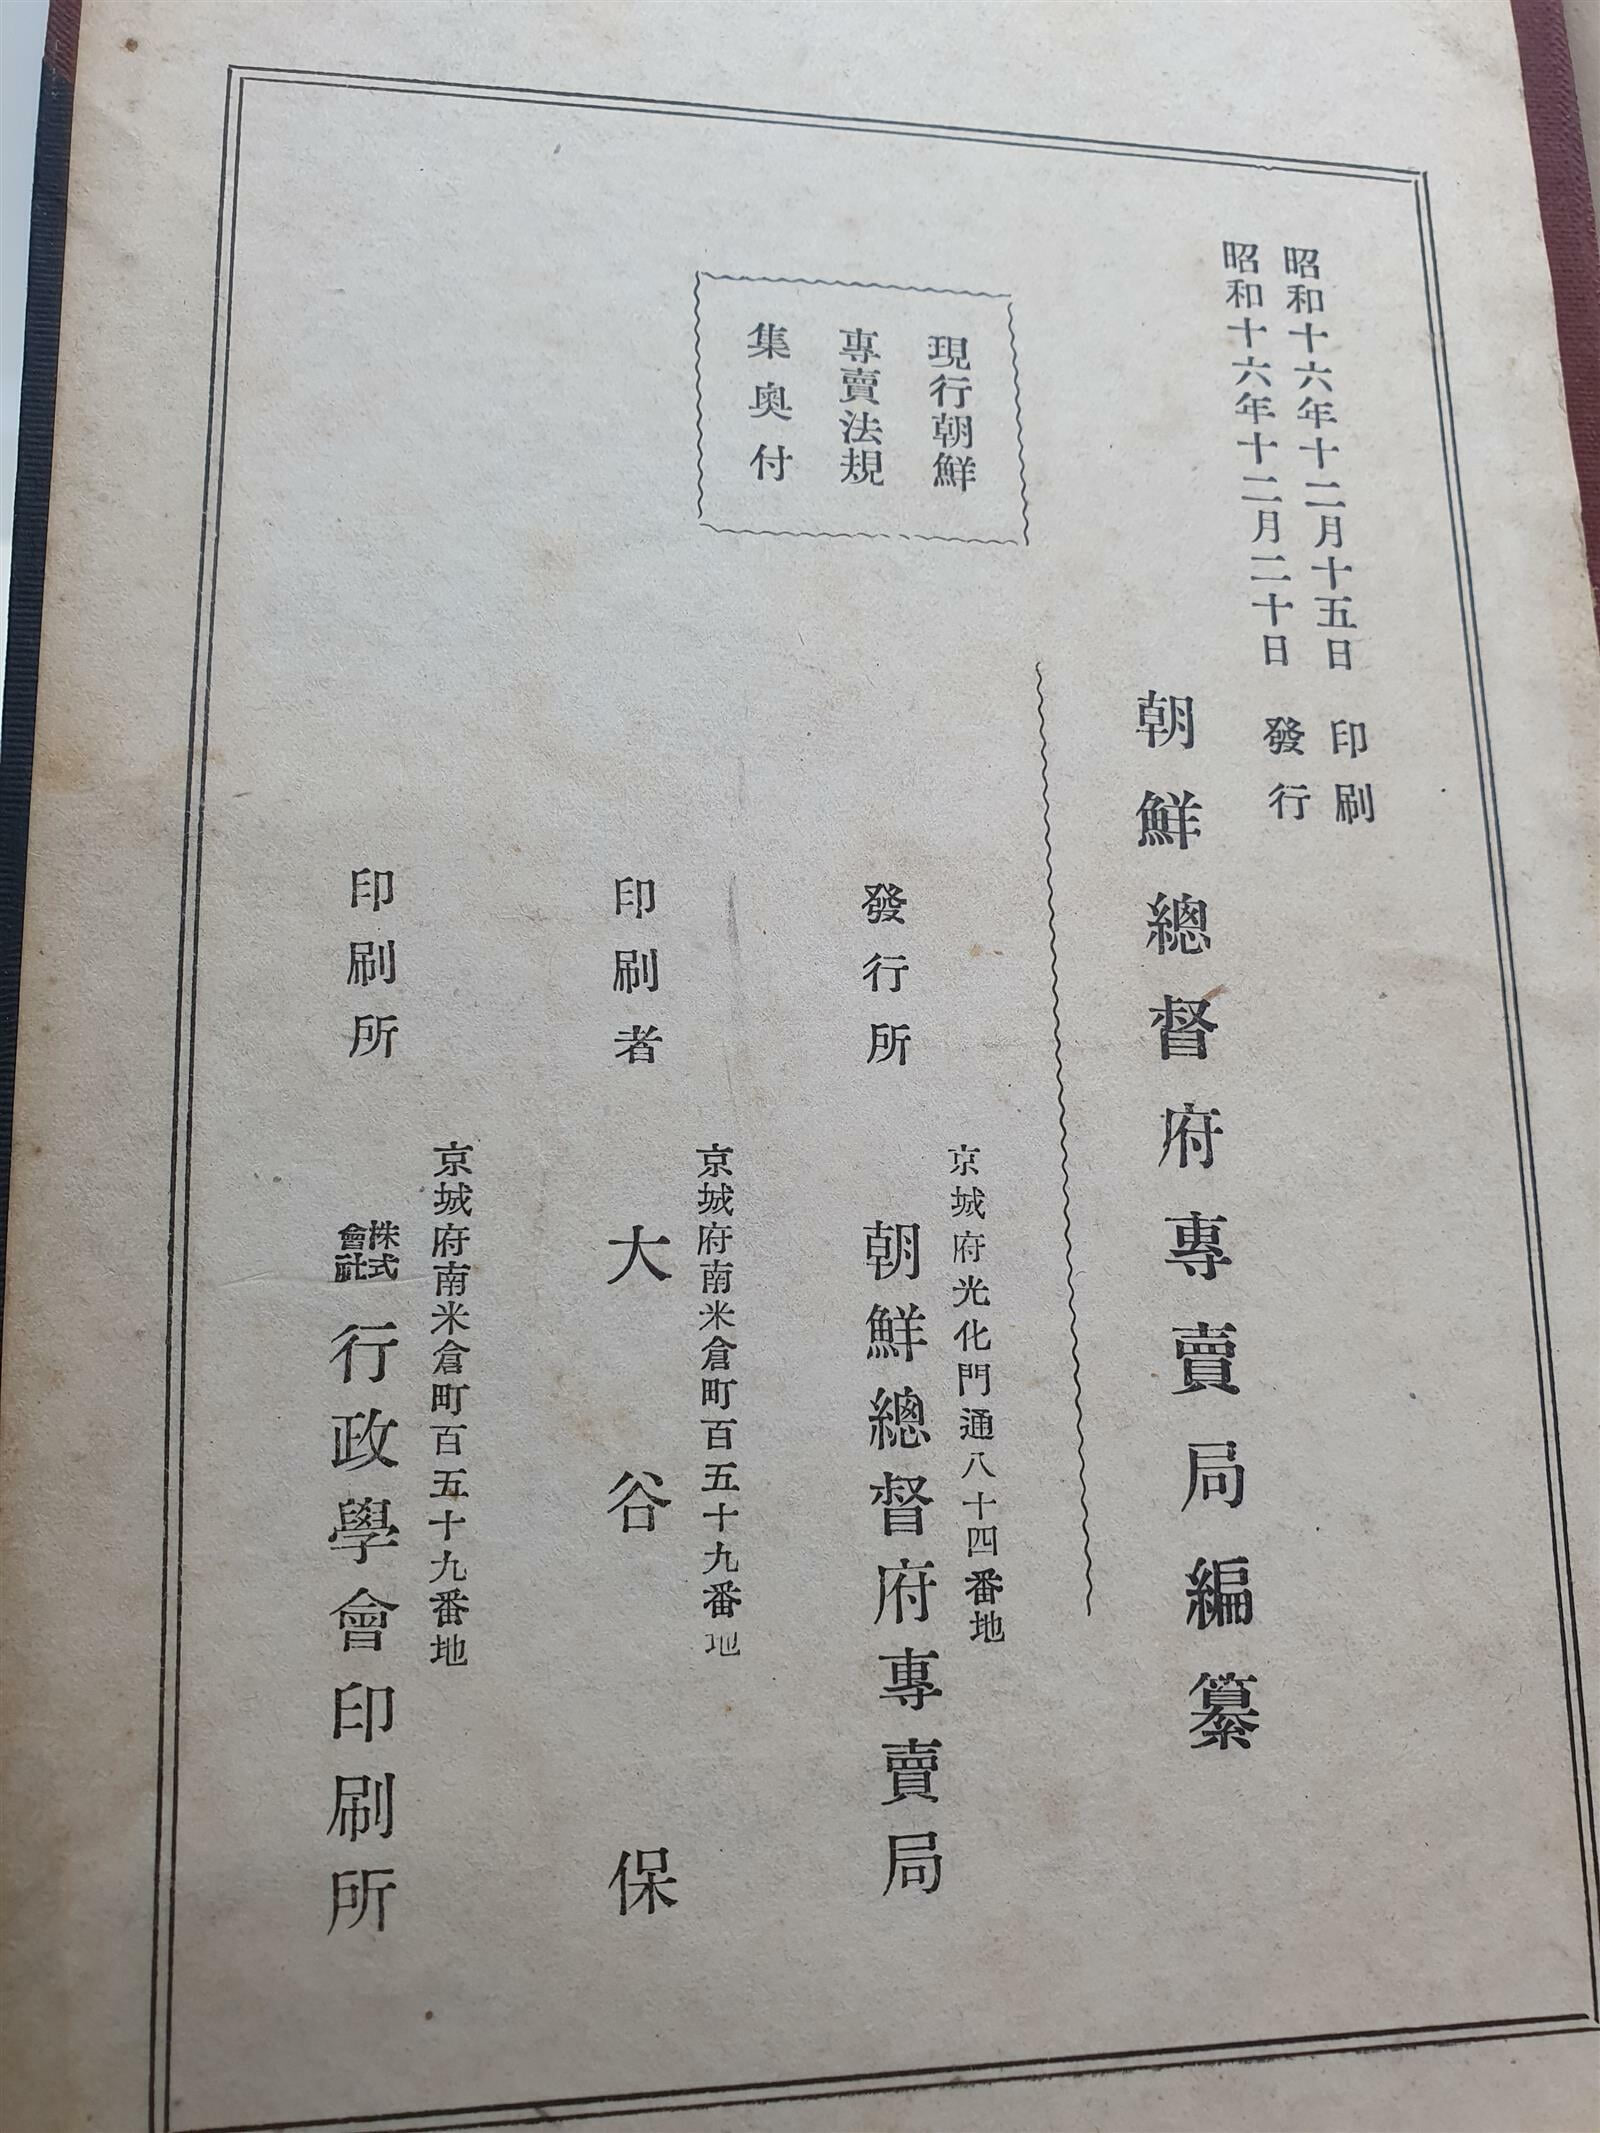 전매법규 제1권 서무 (조선총독부전매국 편찬 / 1941년)